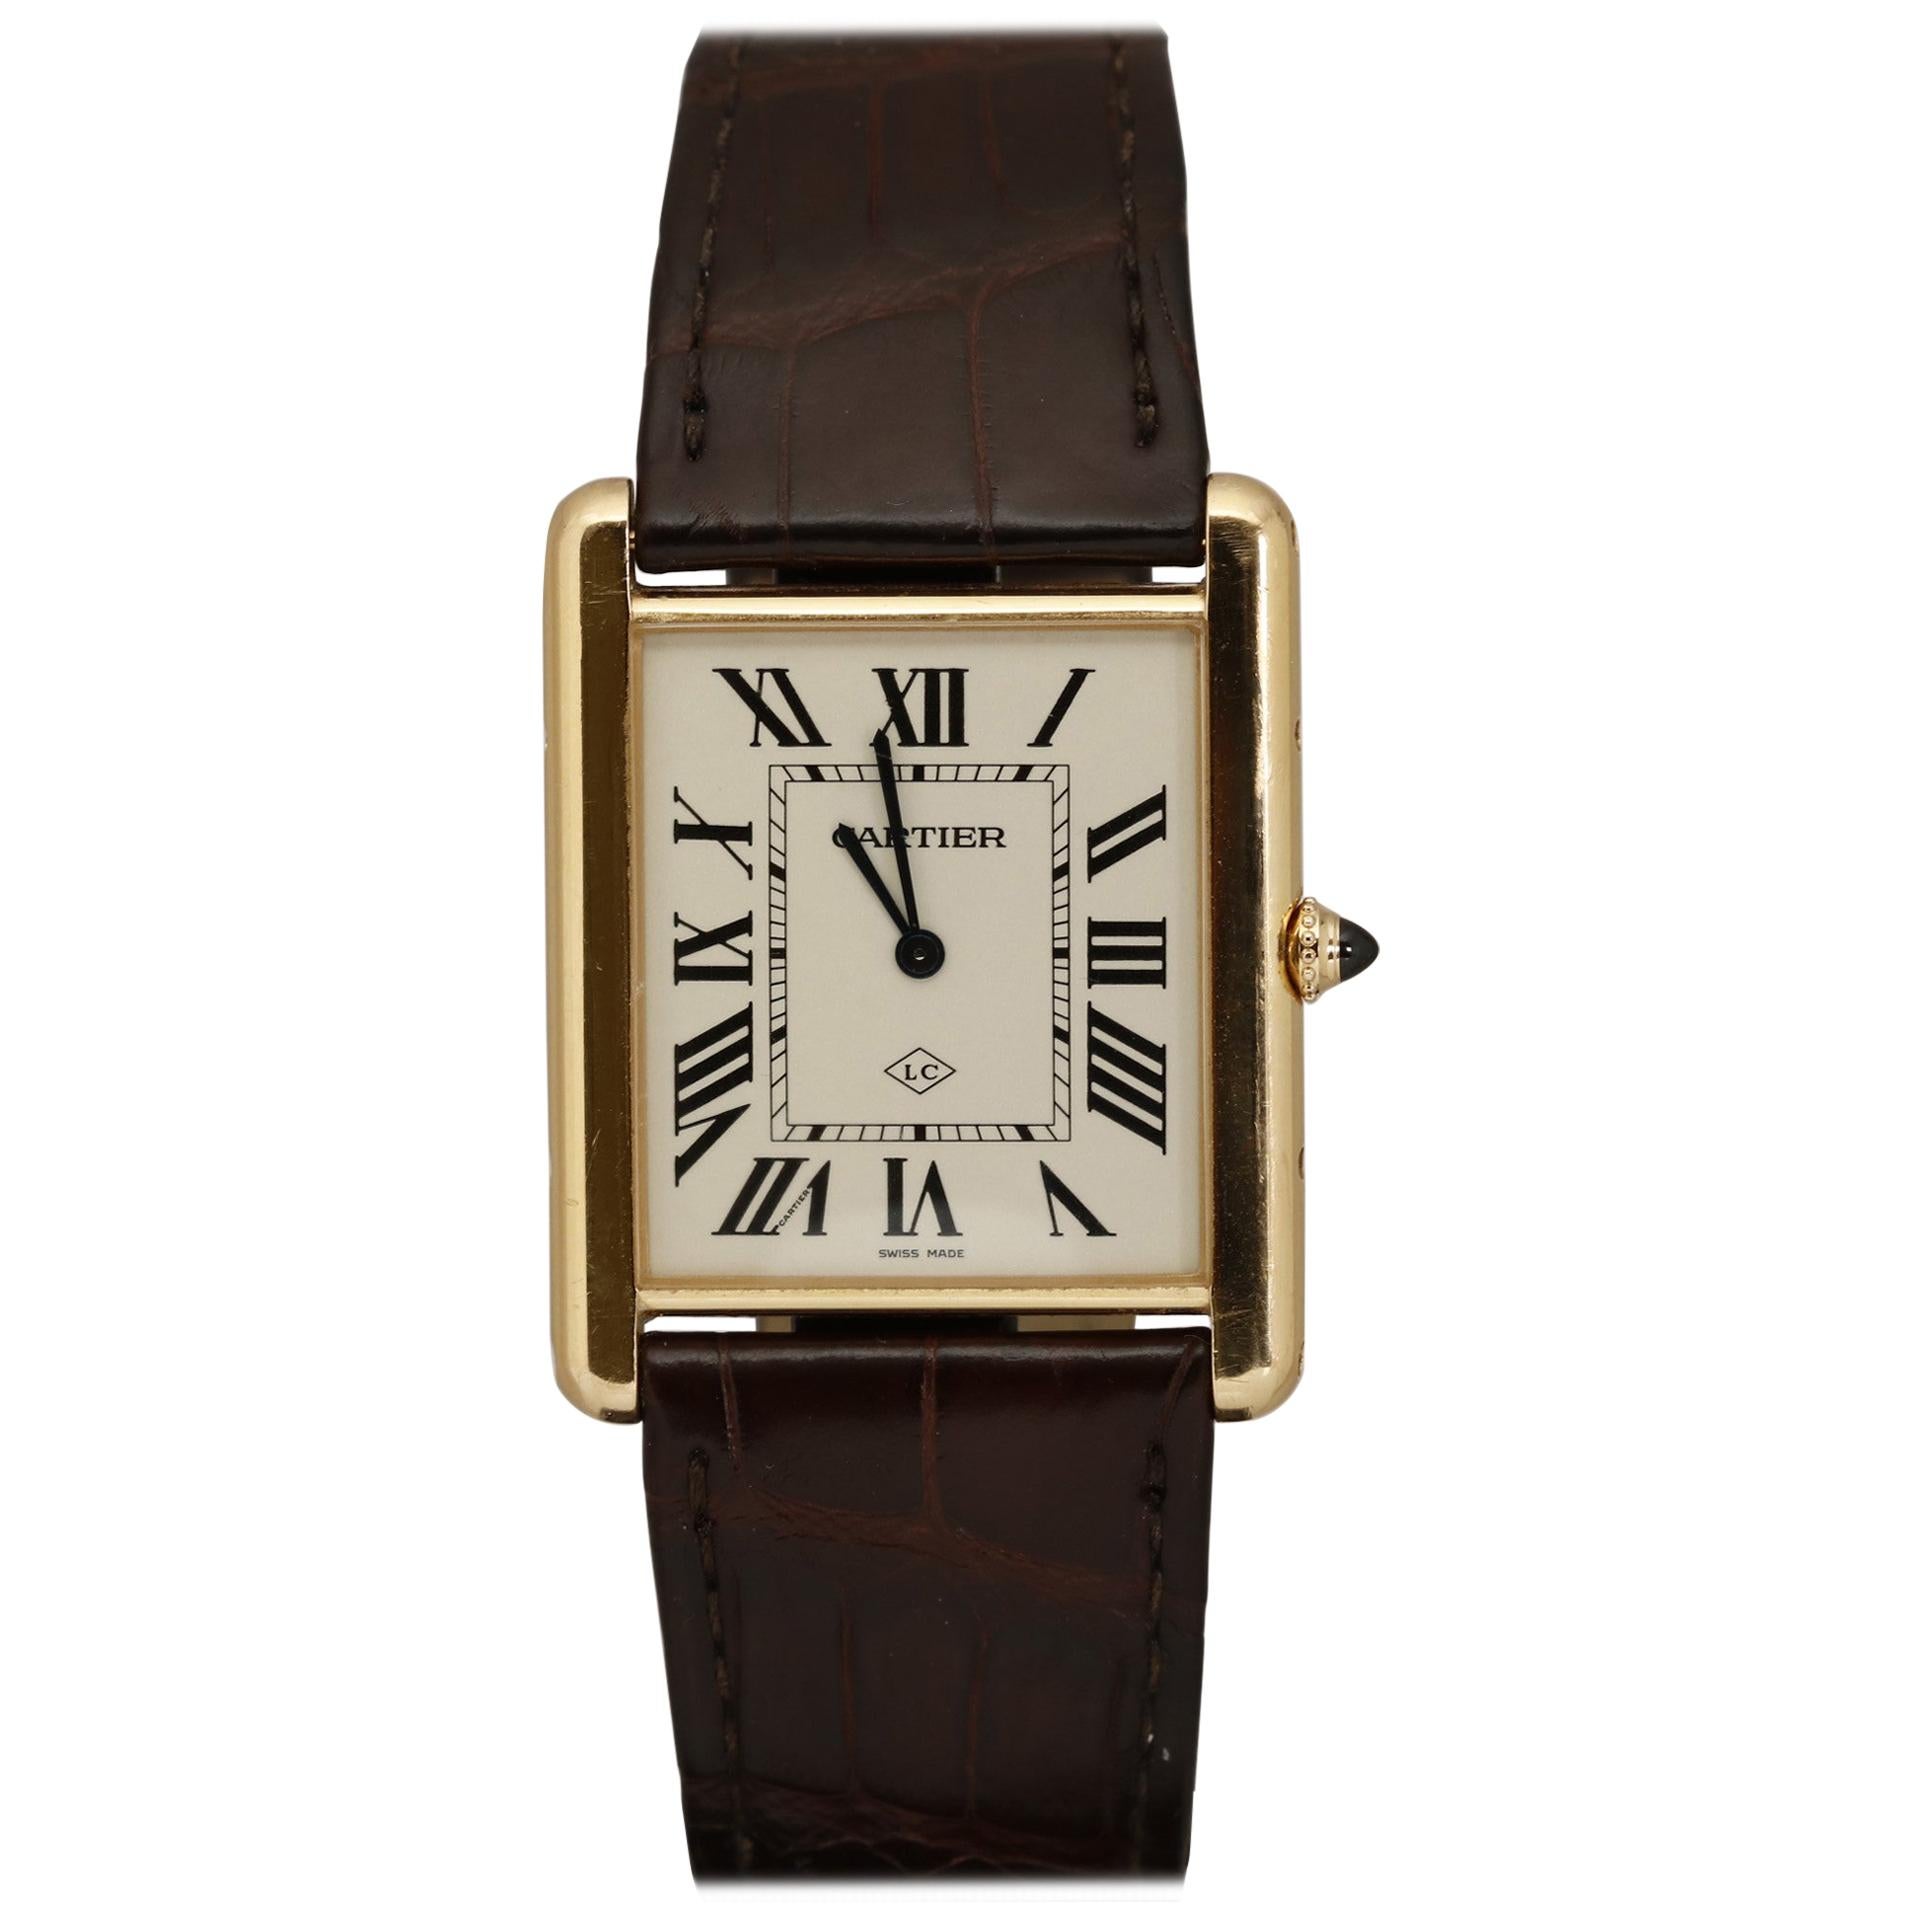 Cartier XL Tank Louis Collaborateur 2013 18k Rose Gold Wristwatch, Modern